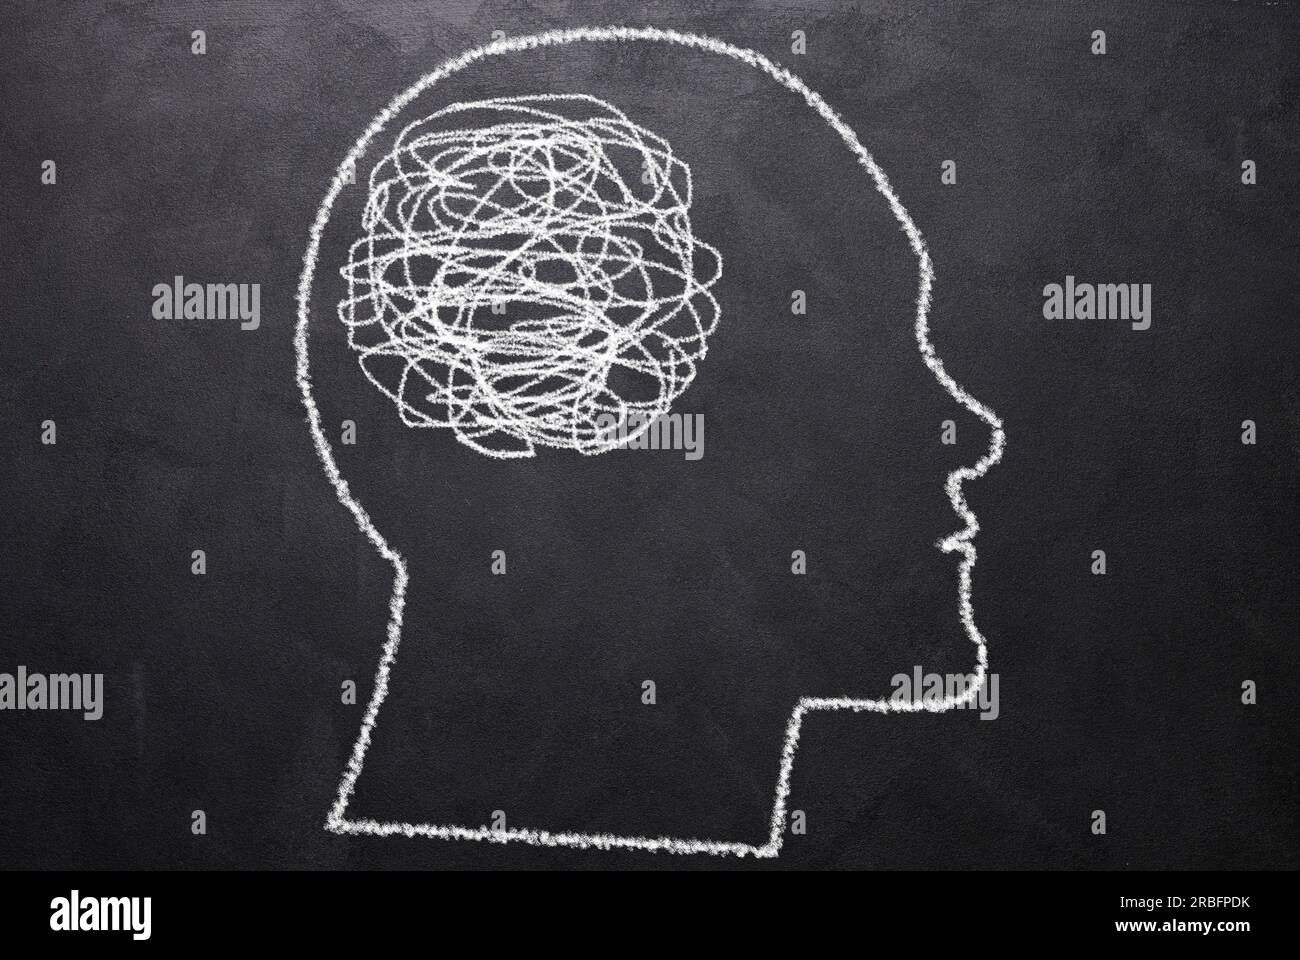 Silhouette dessinée d'une tête humaine avec une boule de fil enchevêtrée dans le cerveau. Concept de confusion, pensées enchevêtrées, recherche de la vérité Banque D'Images